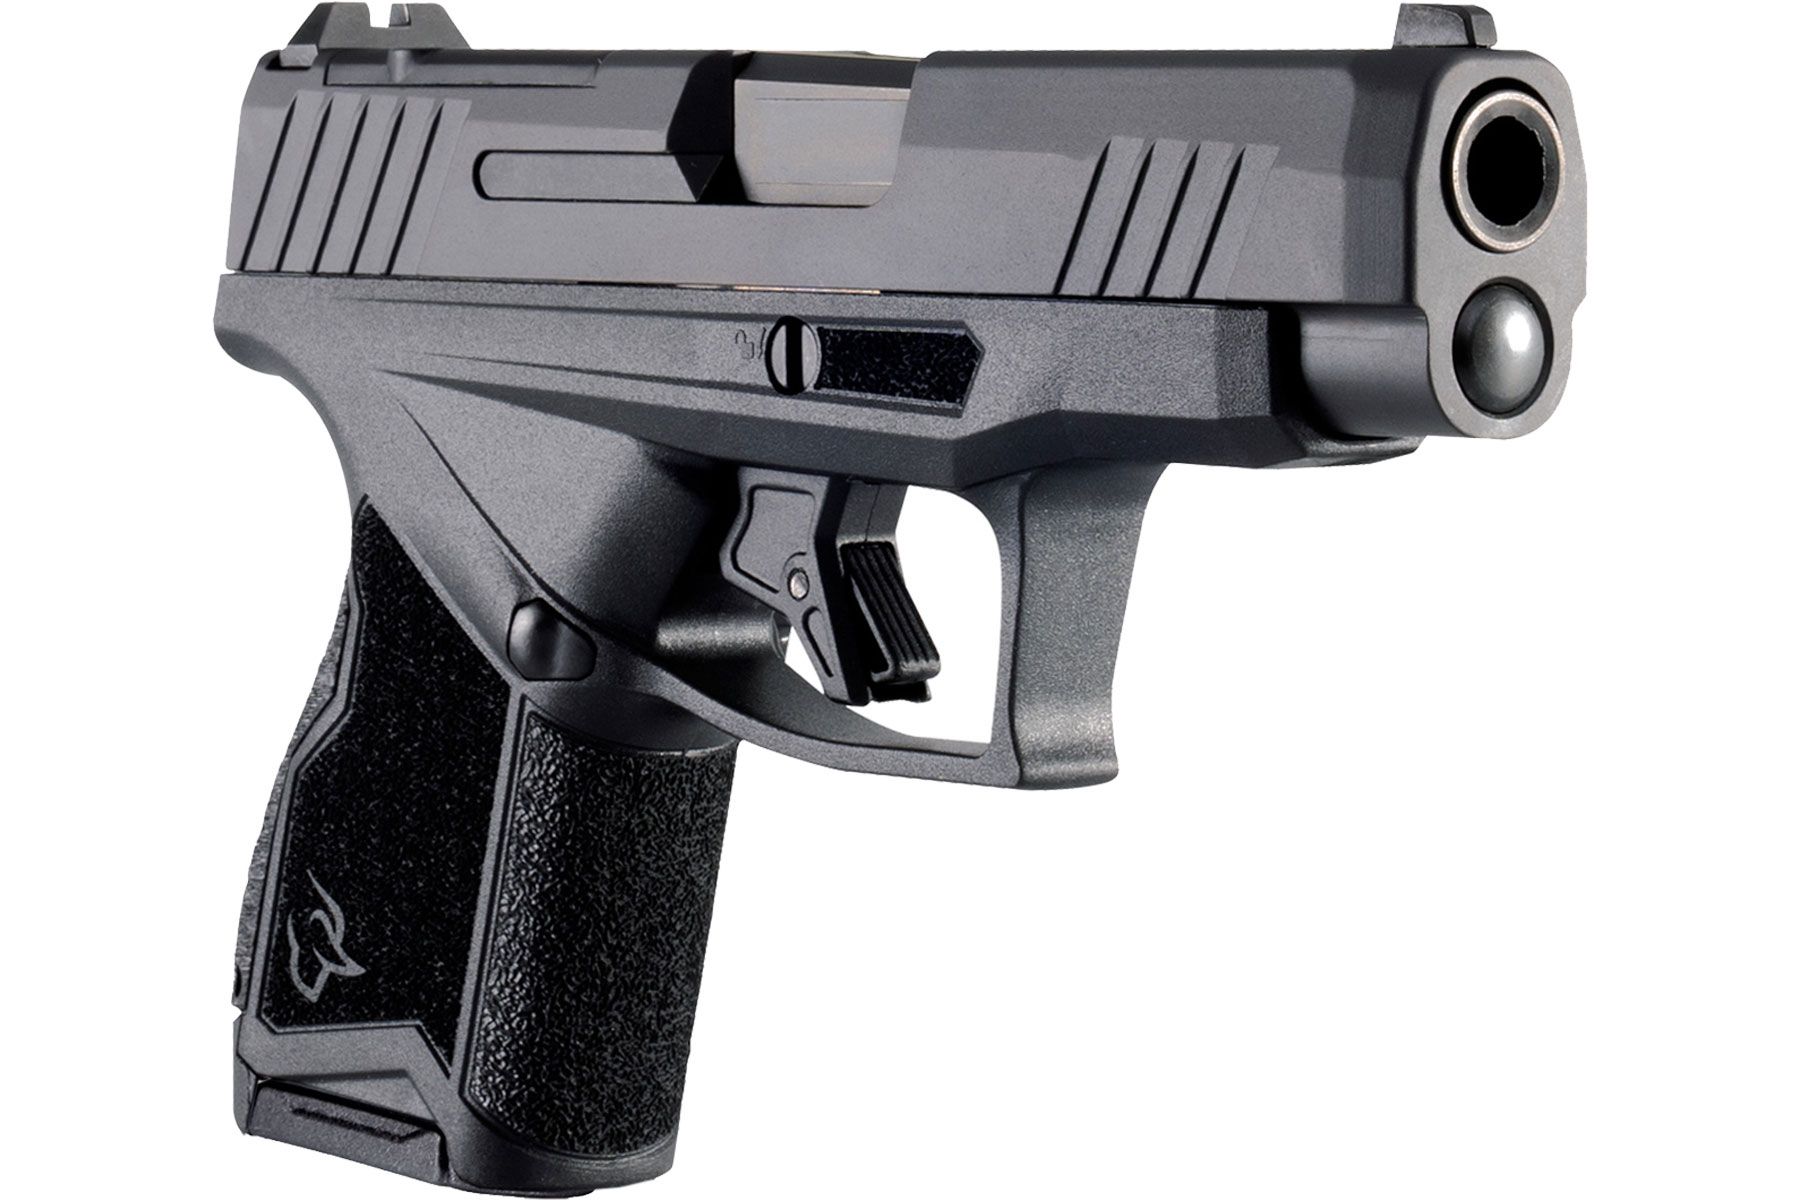 Taurus GX4XL T.O.R.O. Black 9mm Luger 3.7 in. 10 Rds.